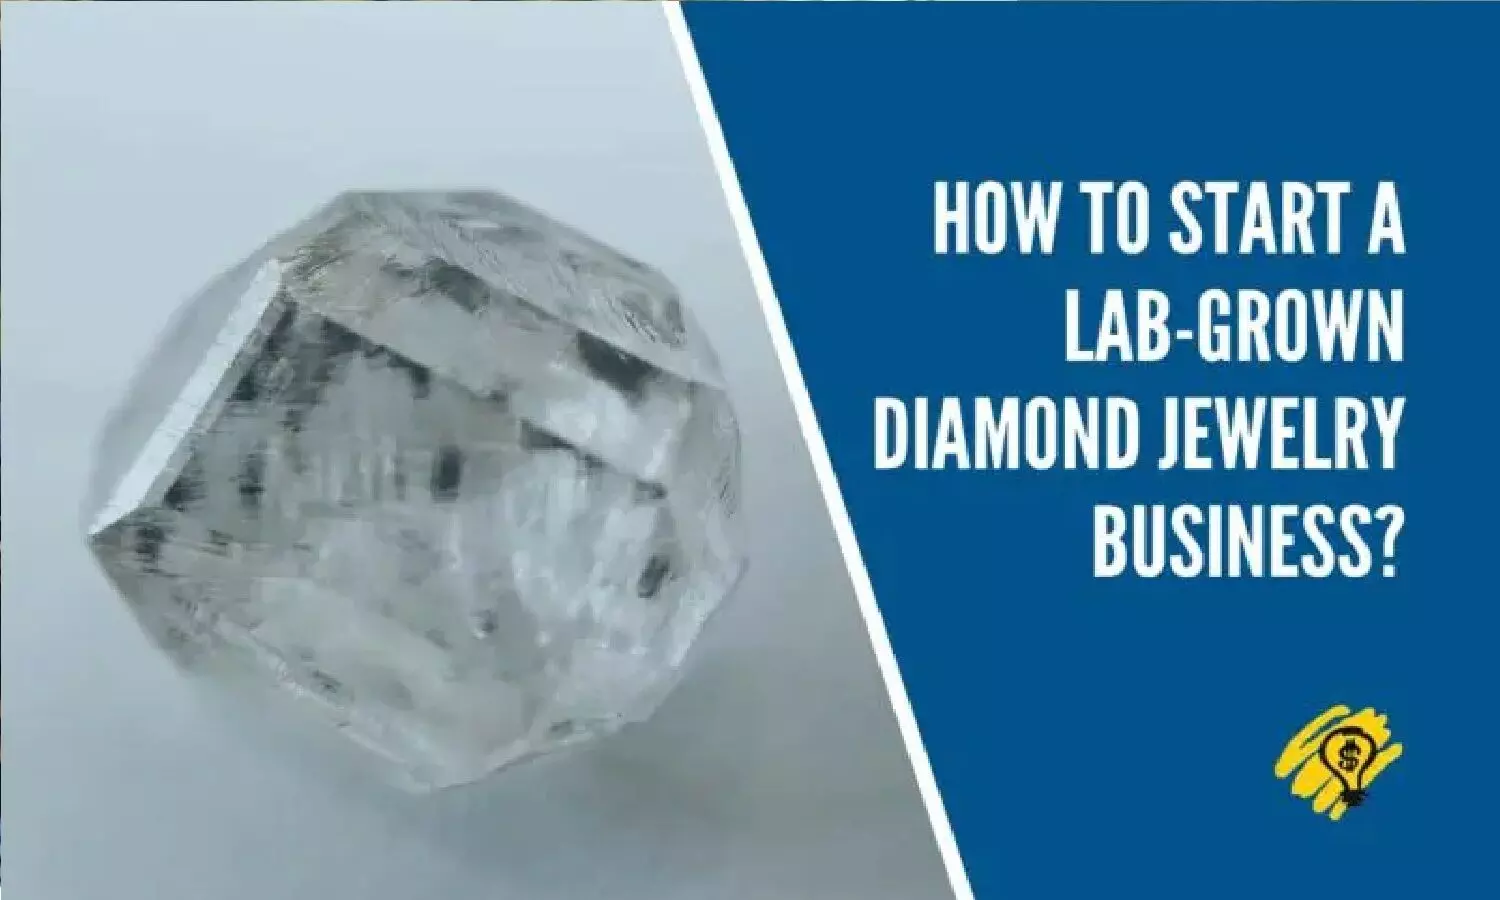 Lab Grown Diamond Business: लैब में हीरा बनाने का बिज़नेस आपको करोड़पति बना देगा, जानें क्या करना पड़ेगा